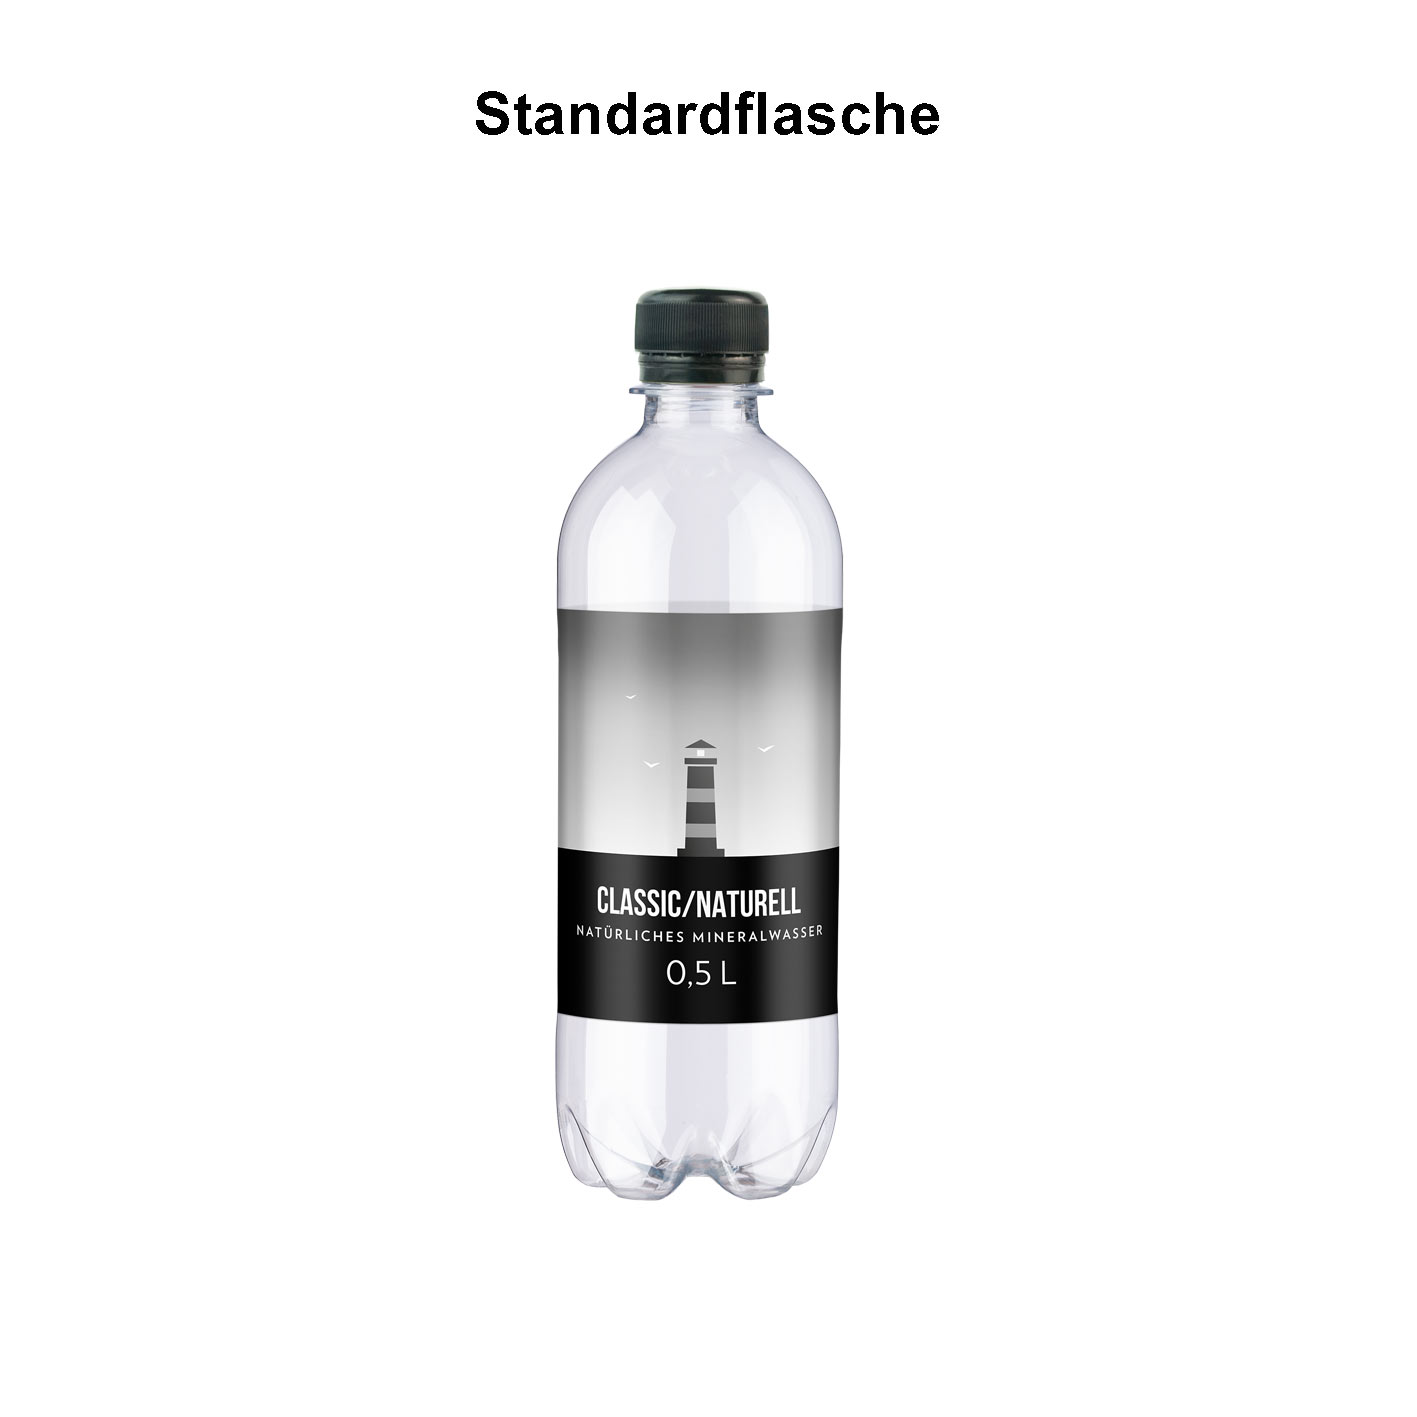 Mineralwasser Standard mit Logo